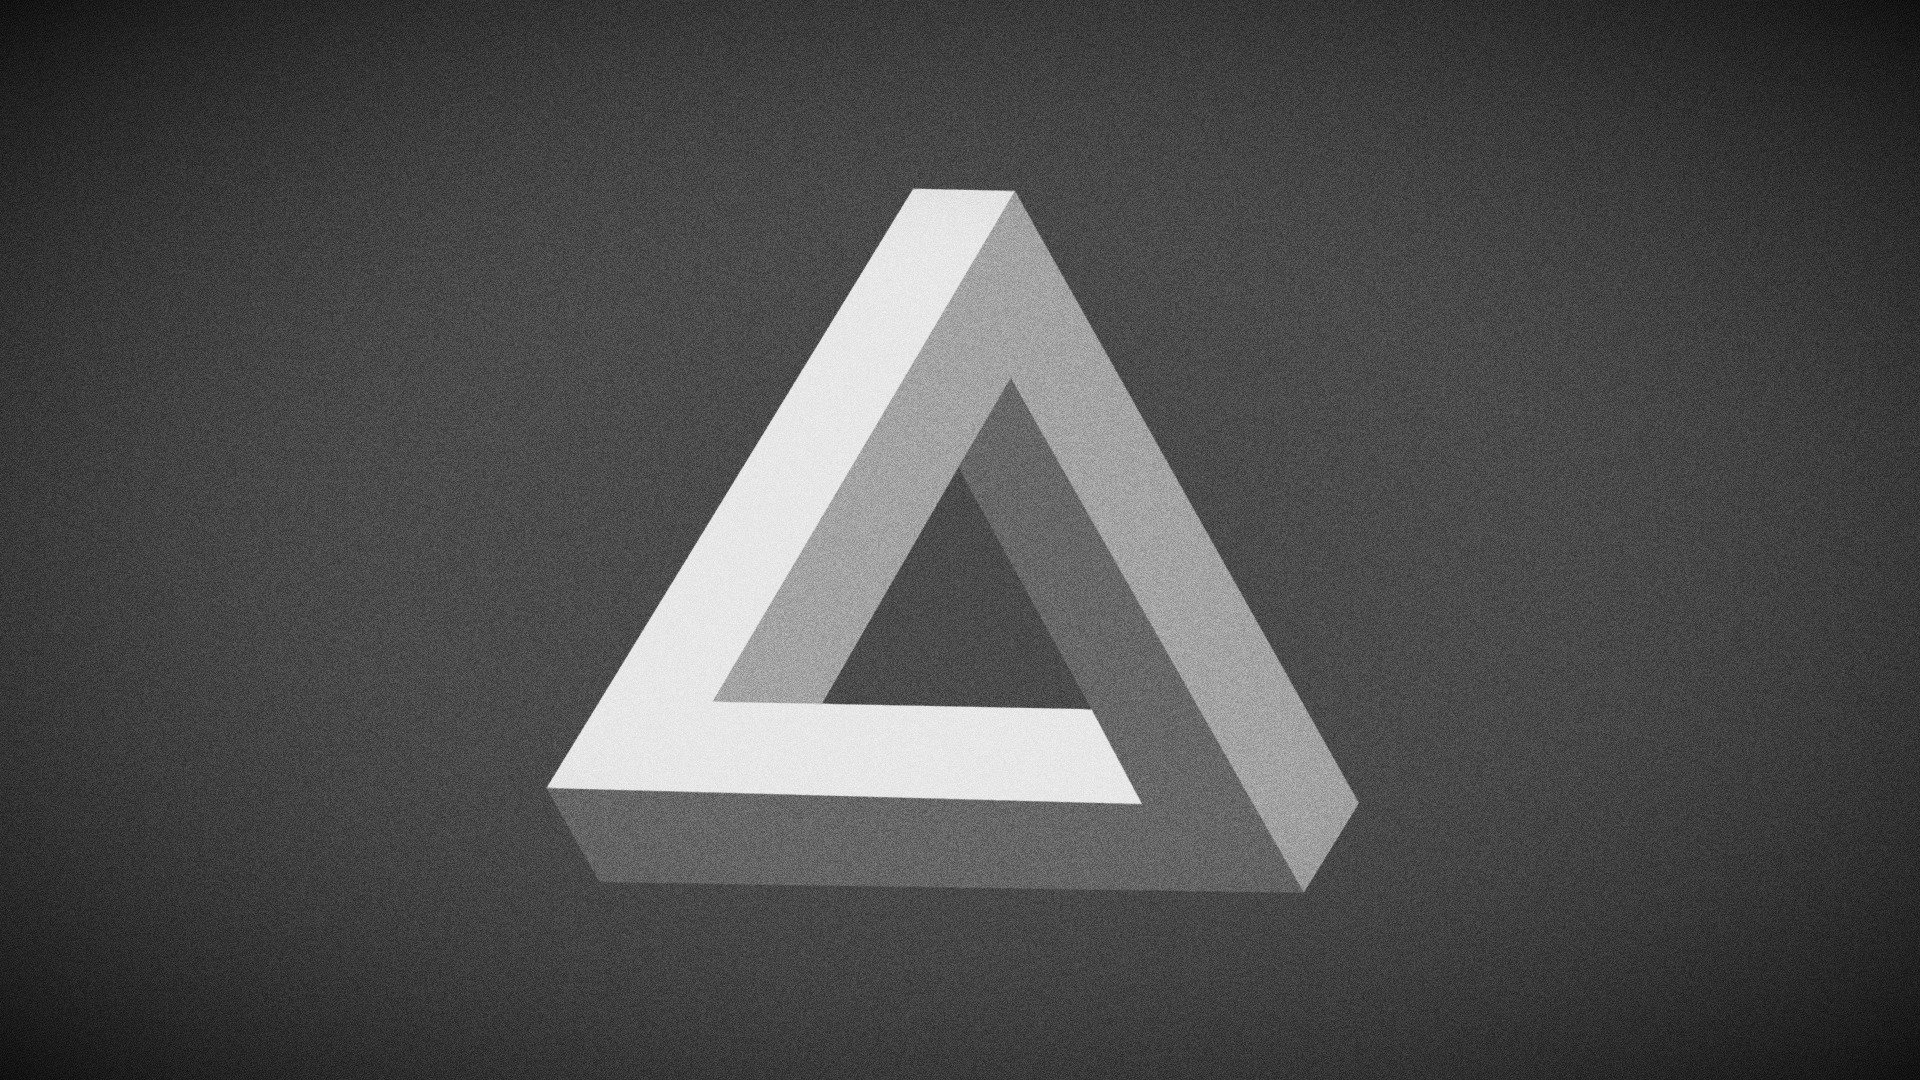 The Penrose triangle